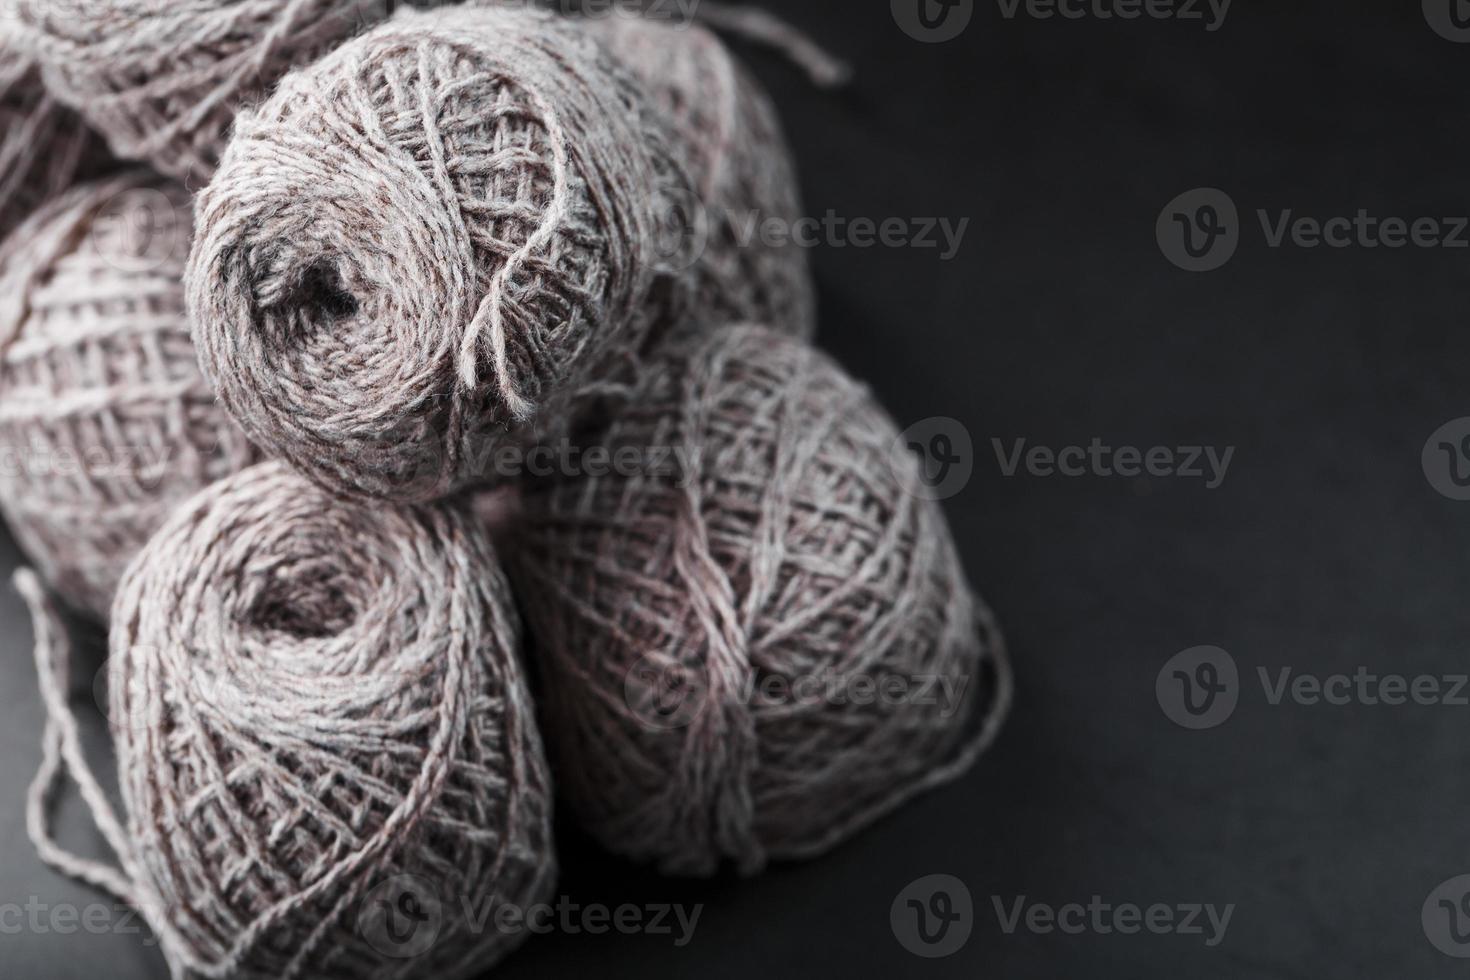 fil marron clair en laine de mouton naturelle. photo